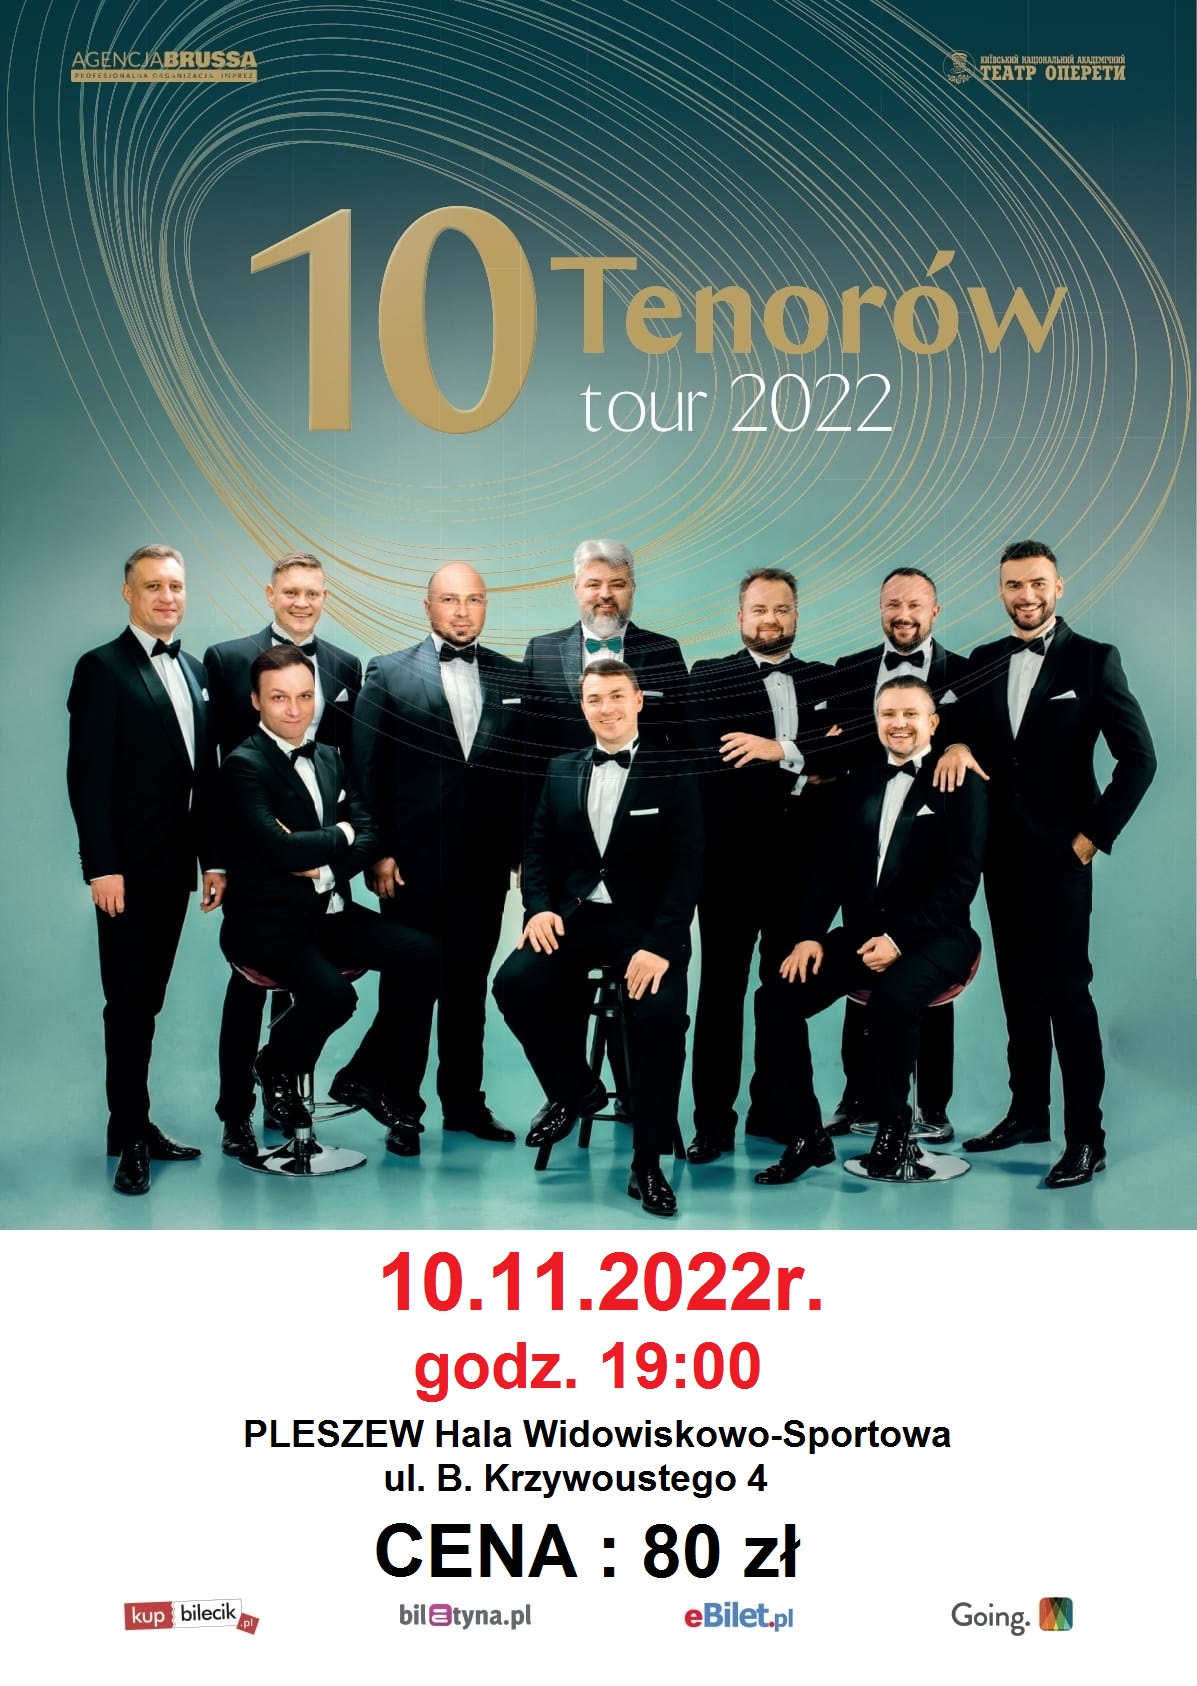 plakat koncertu 10 Tenorów tour 2022 w Hali Widowiskowo-Sportowej w Pleszewie 10 listopada 2022 o godzinie 19:00